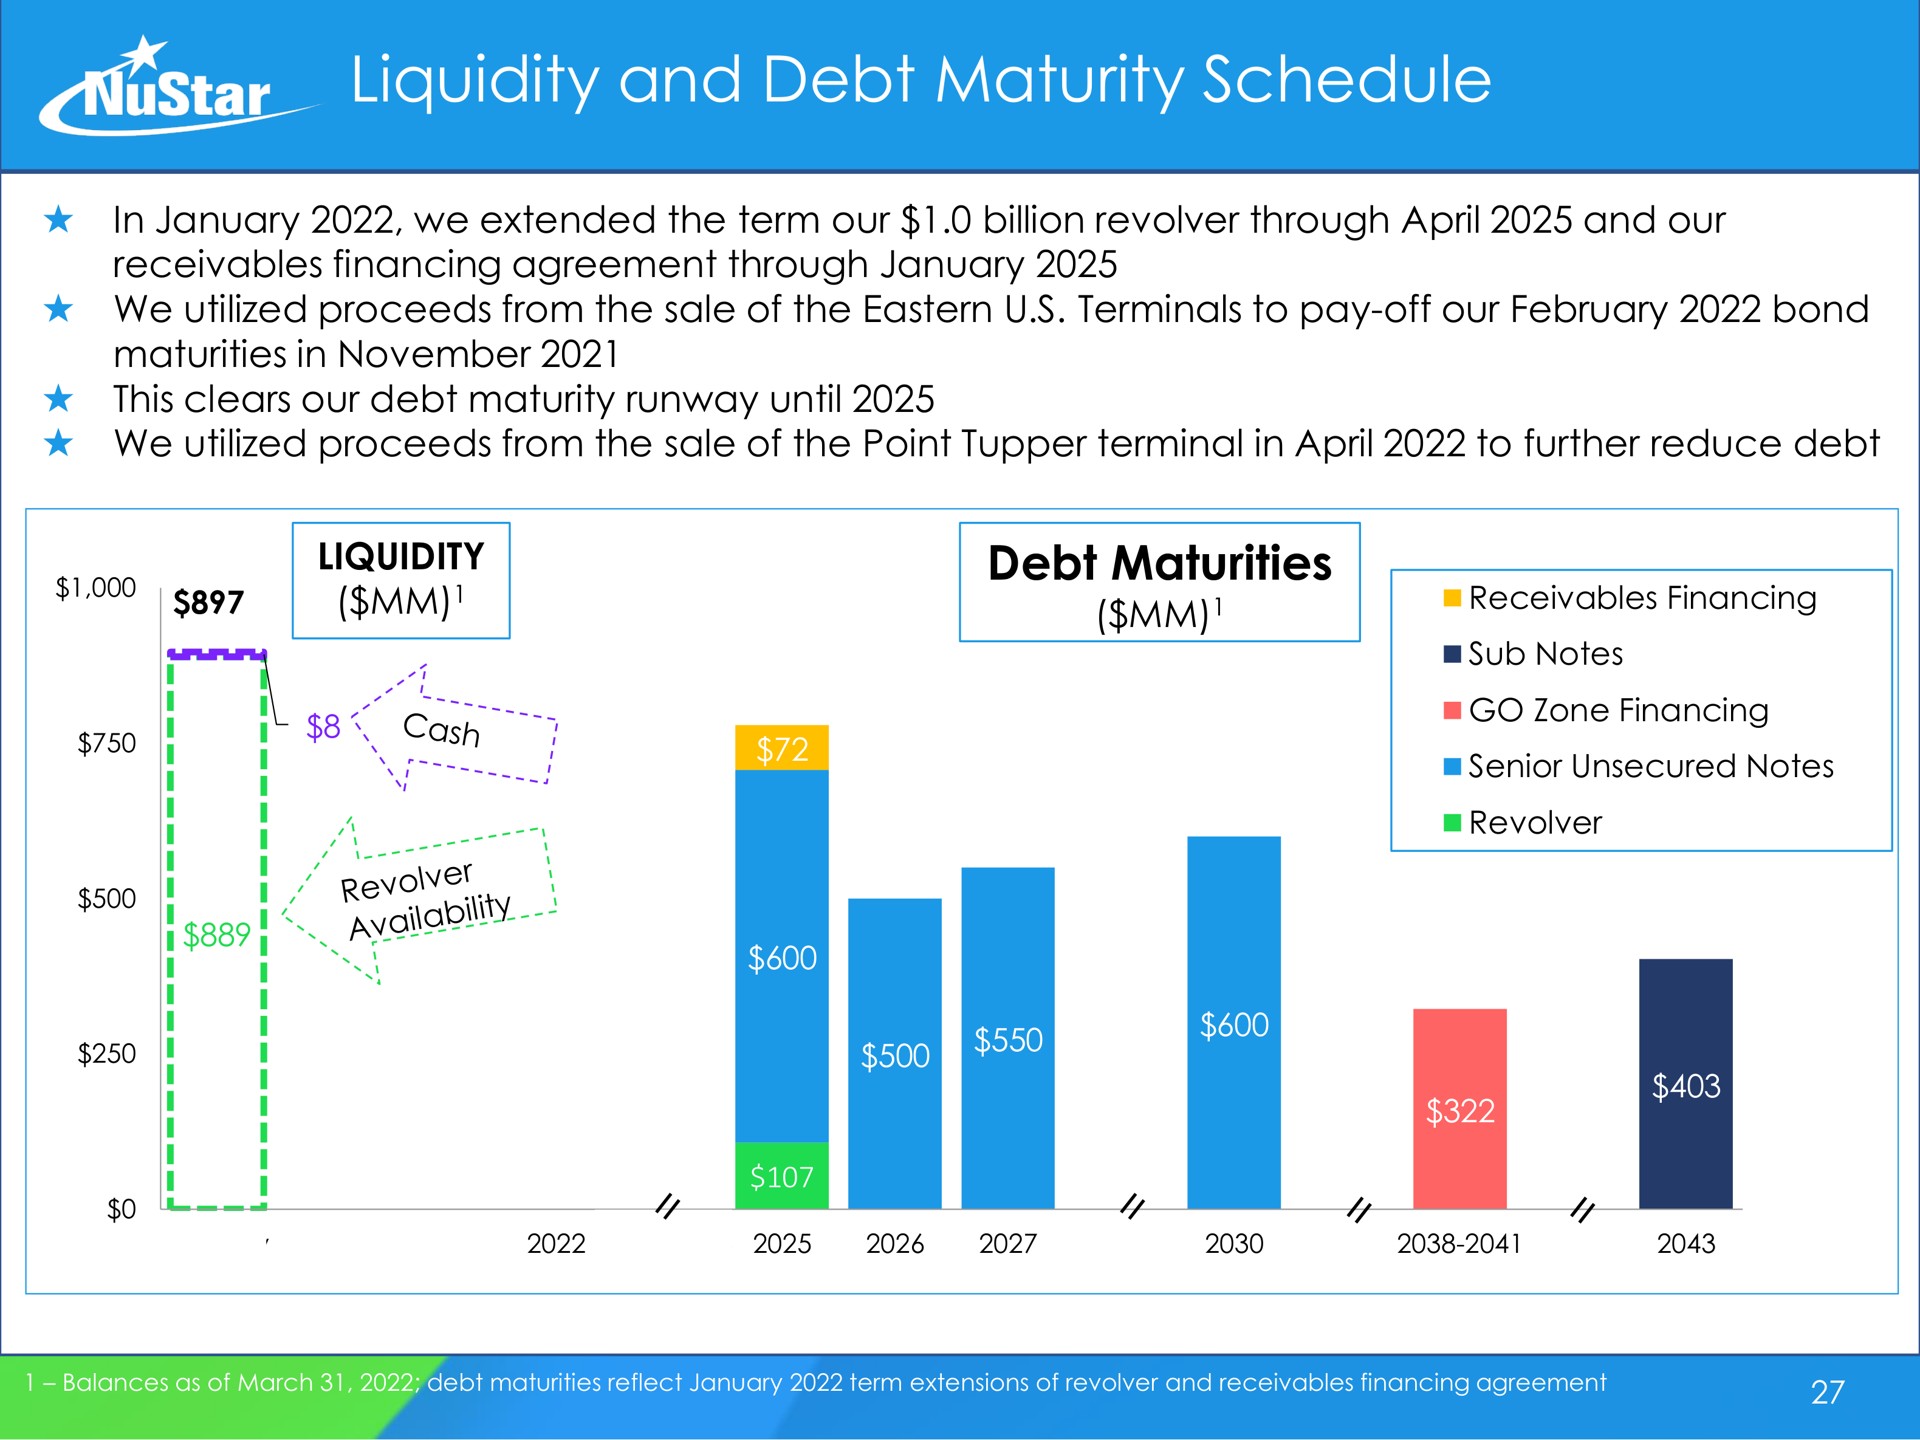 liquidity and debt maturity schedule debt maturities ers cosh pee soy | NuStar Energy